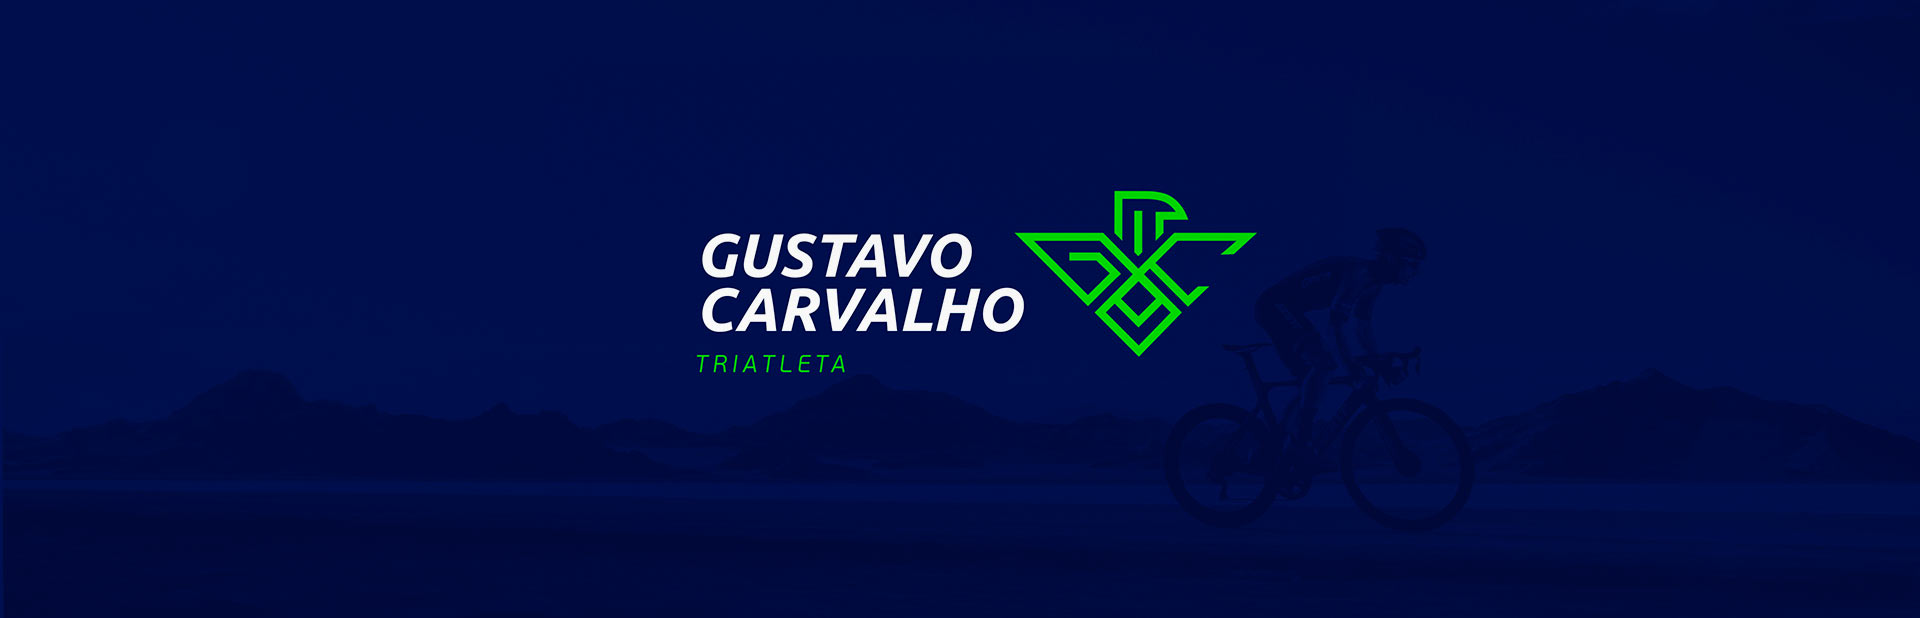 gustavo-carvalho-triatleta-logotipo3